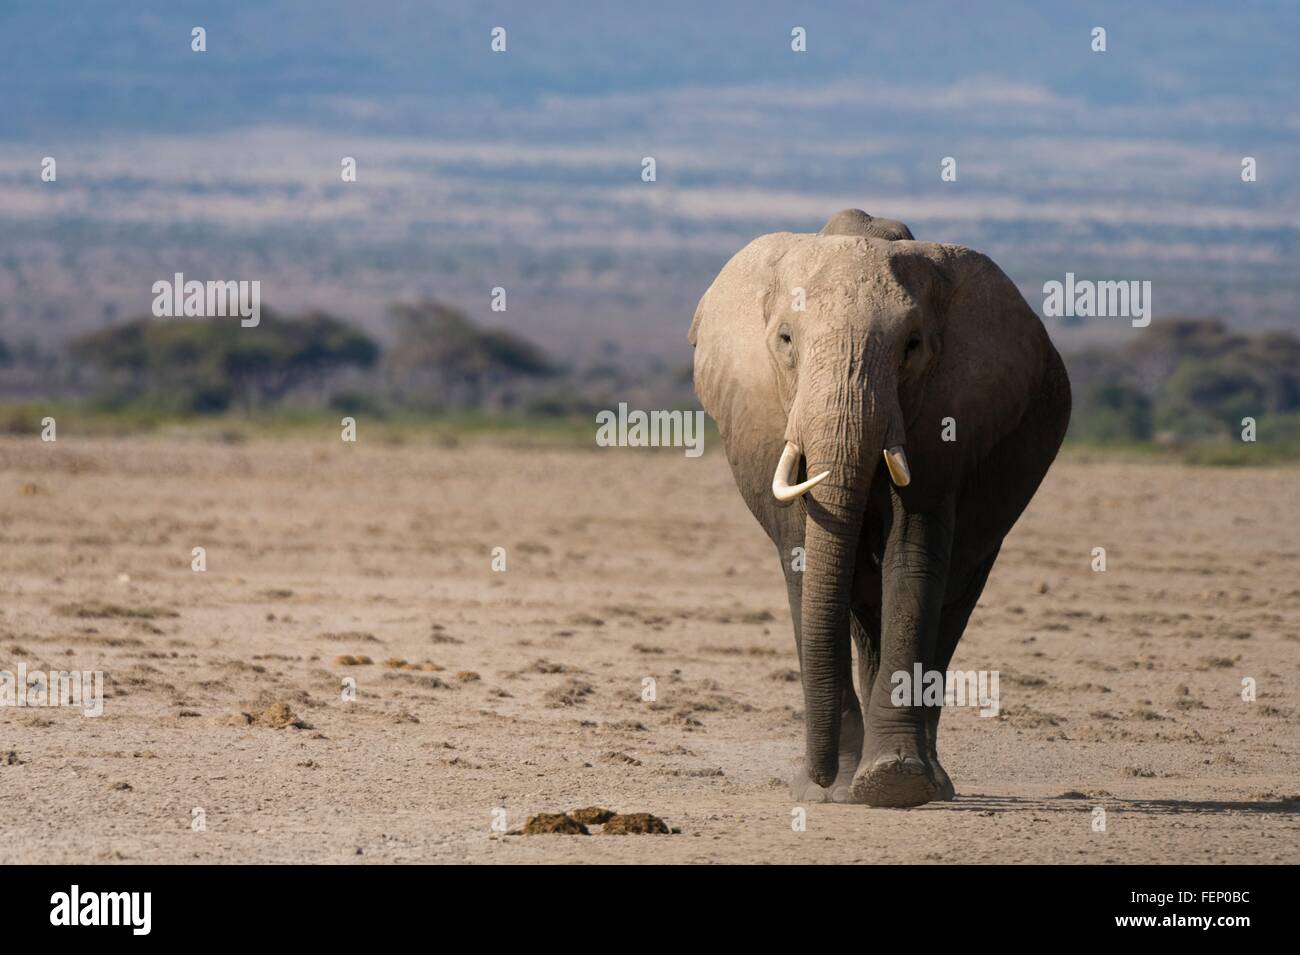 African elephants (Loxodonta africana), Amboseli National Park, Kenya, Africa Stock Photo